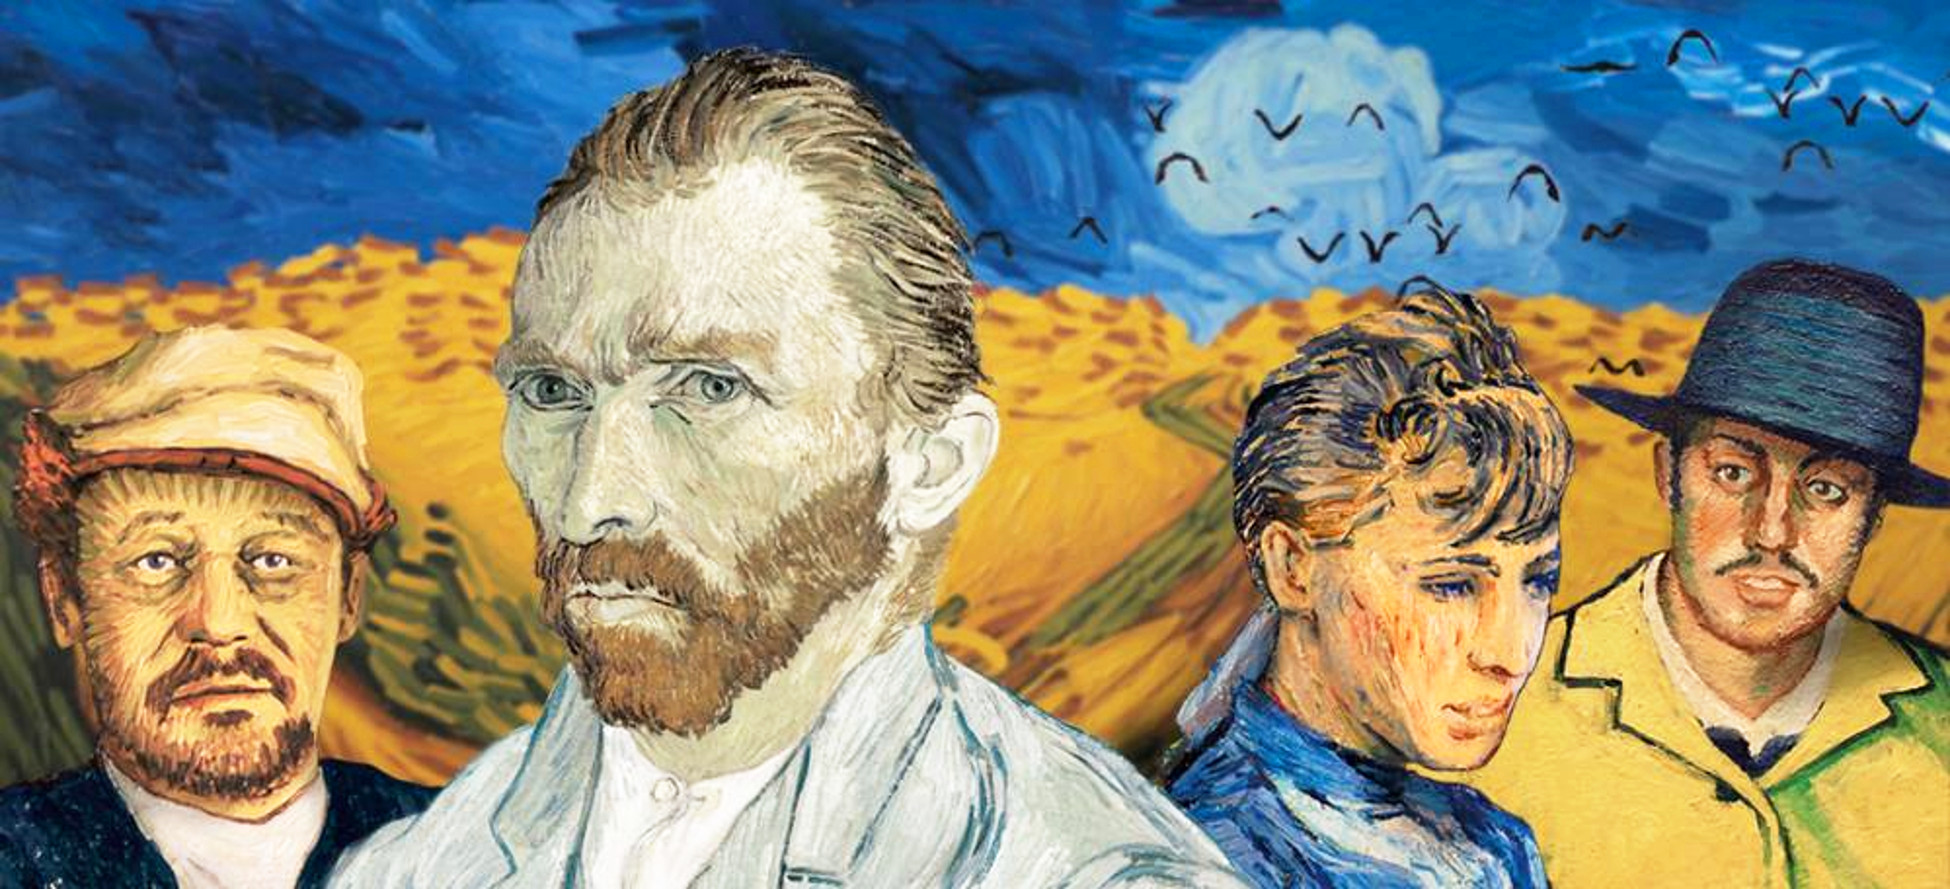 Van Gogh w gdańskiej Oliwie. Wystawa filmowych obrazów